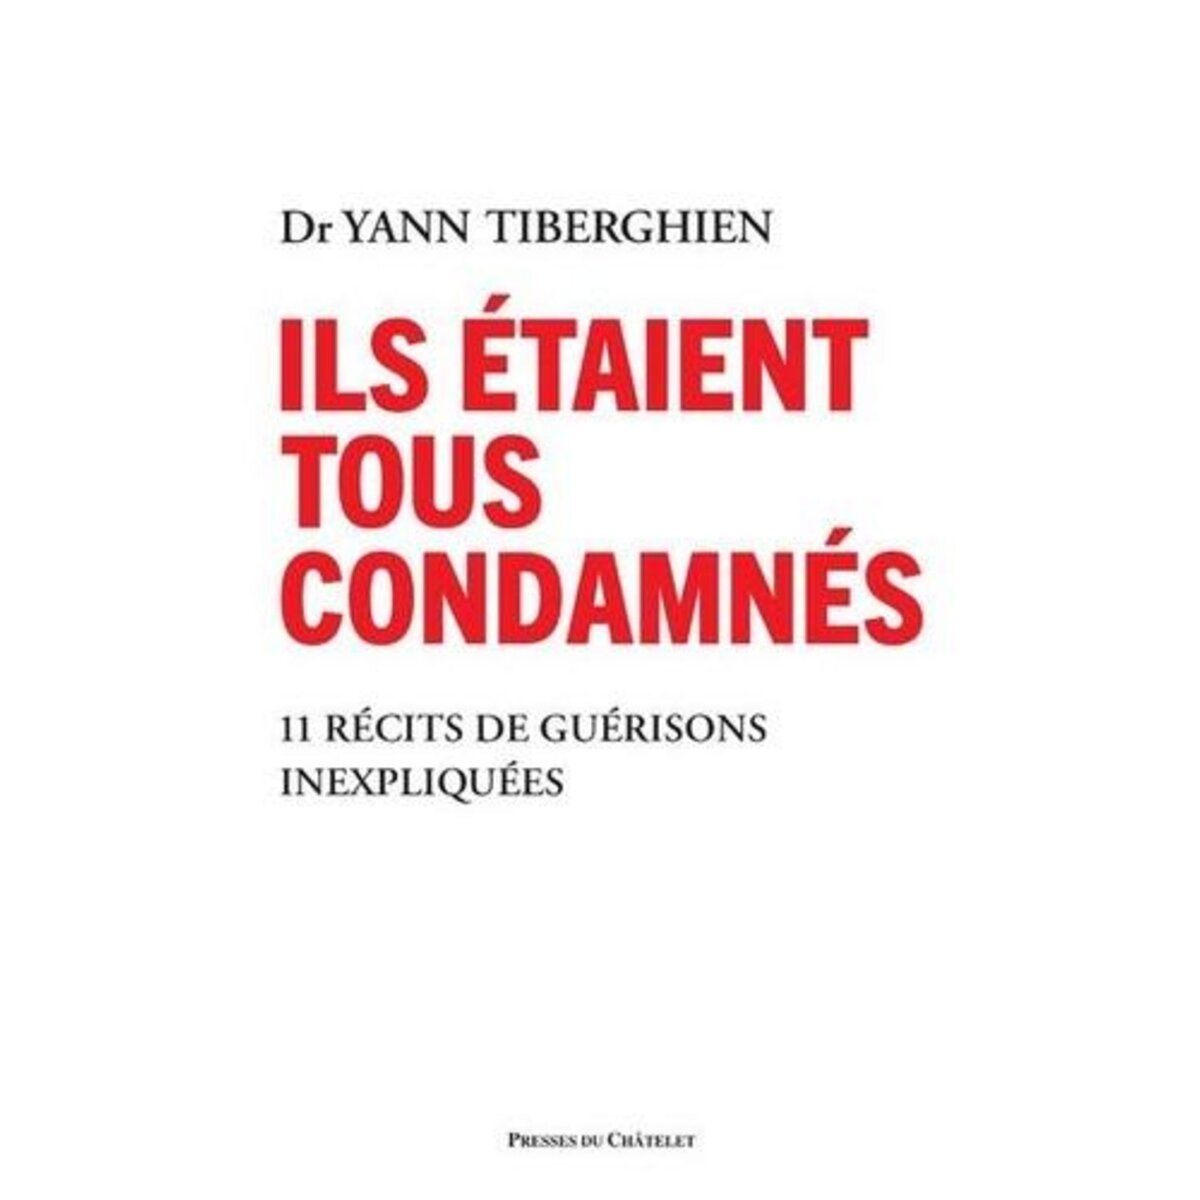  ILS ETAIENT TOUS CONDAMNES. 11 RECITS DE GUERISONS INEXPLIQUEES, Tiberghien Yann